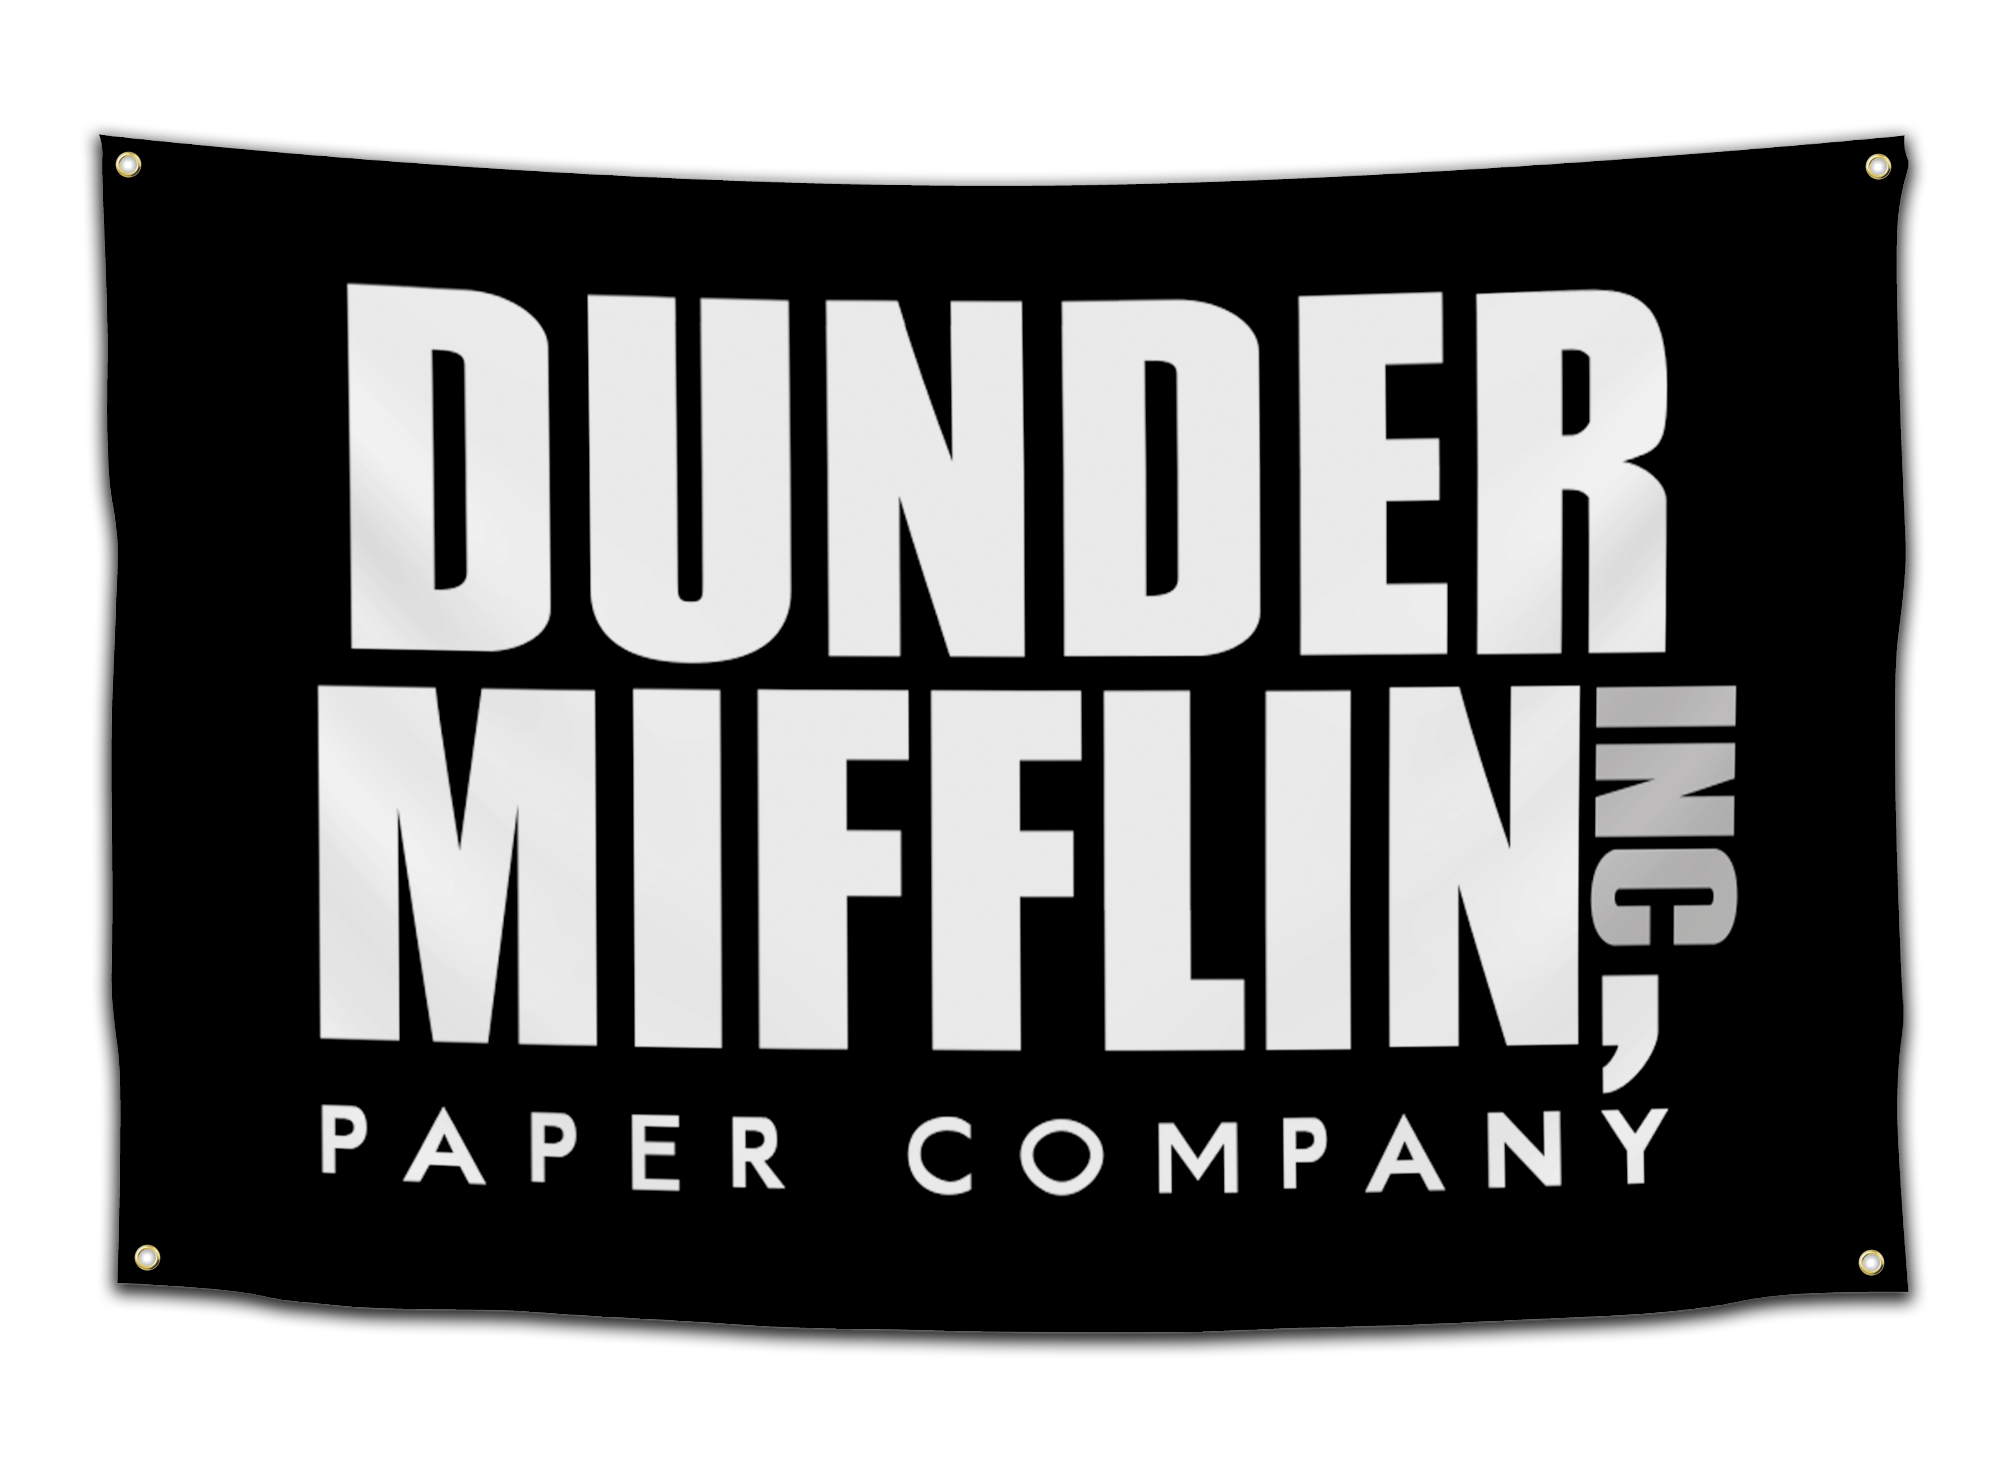 The Office Dunder Mifflin, Inc. - Logo